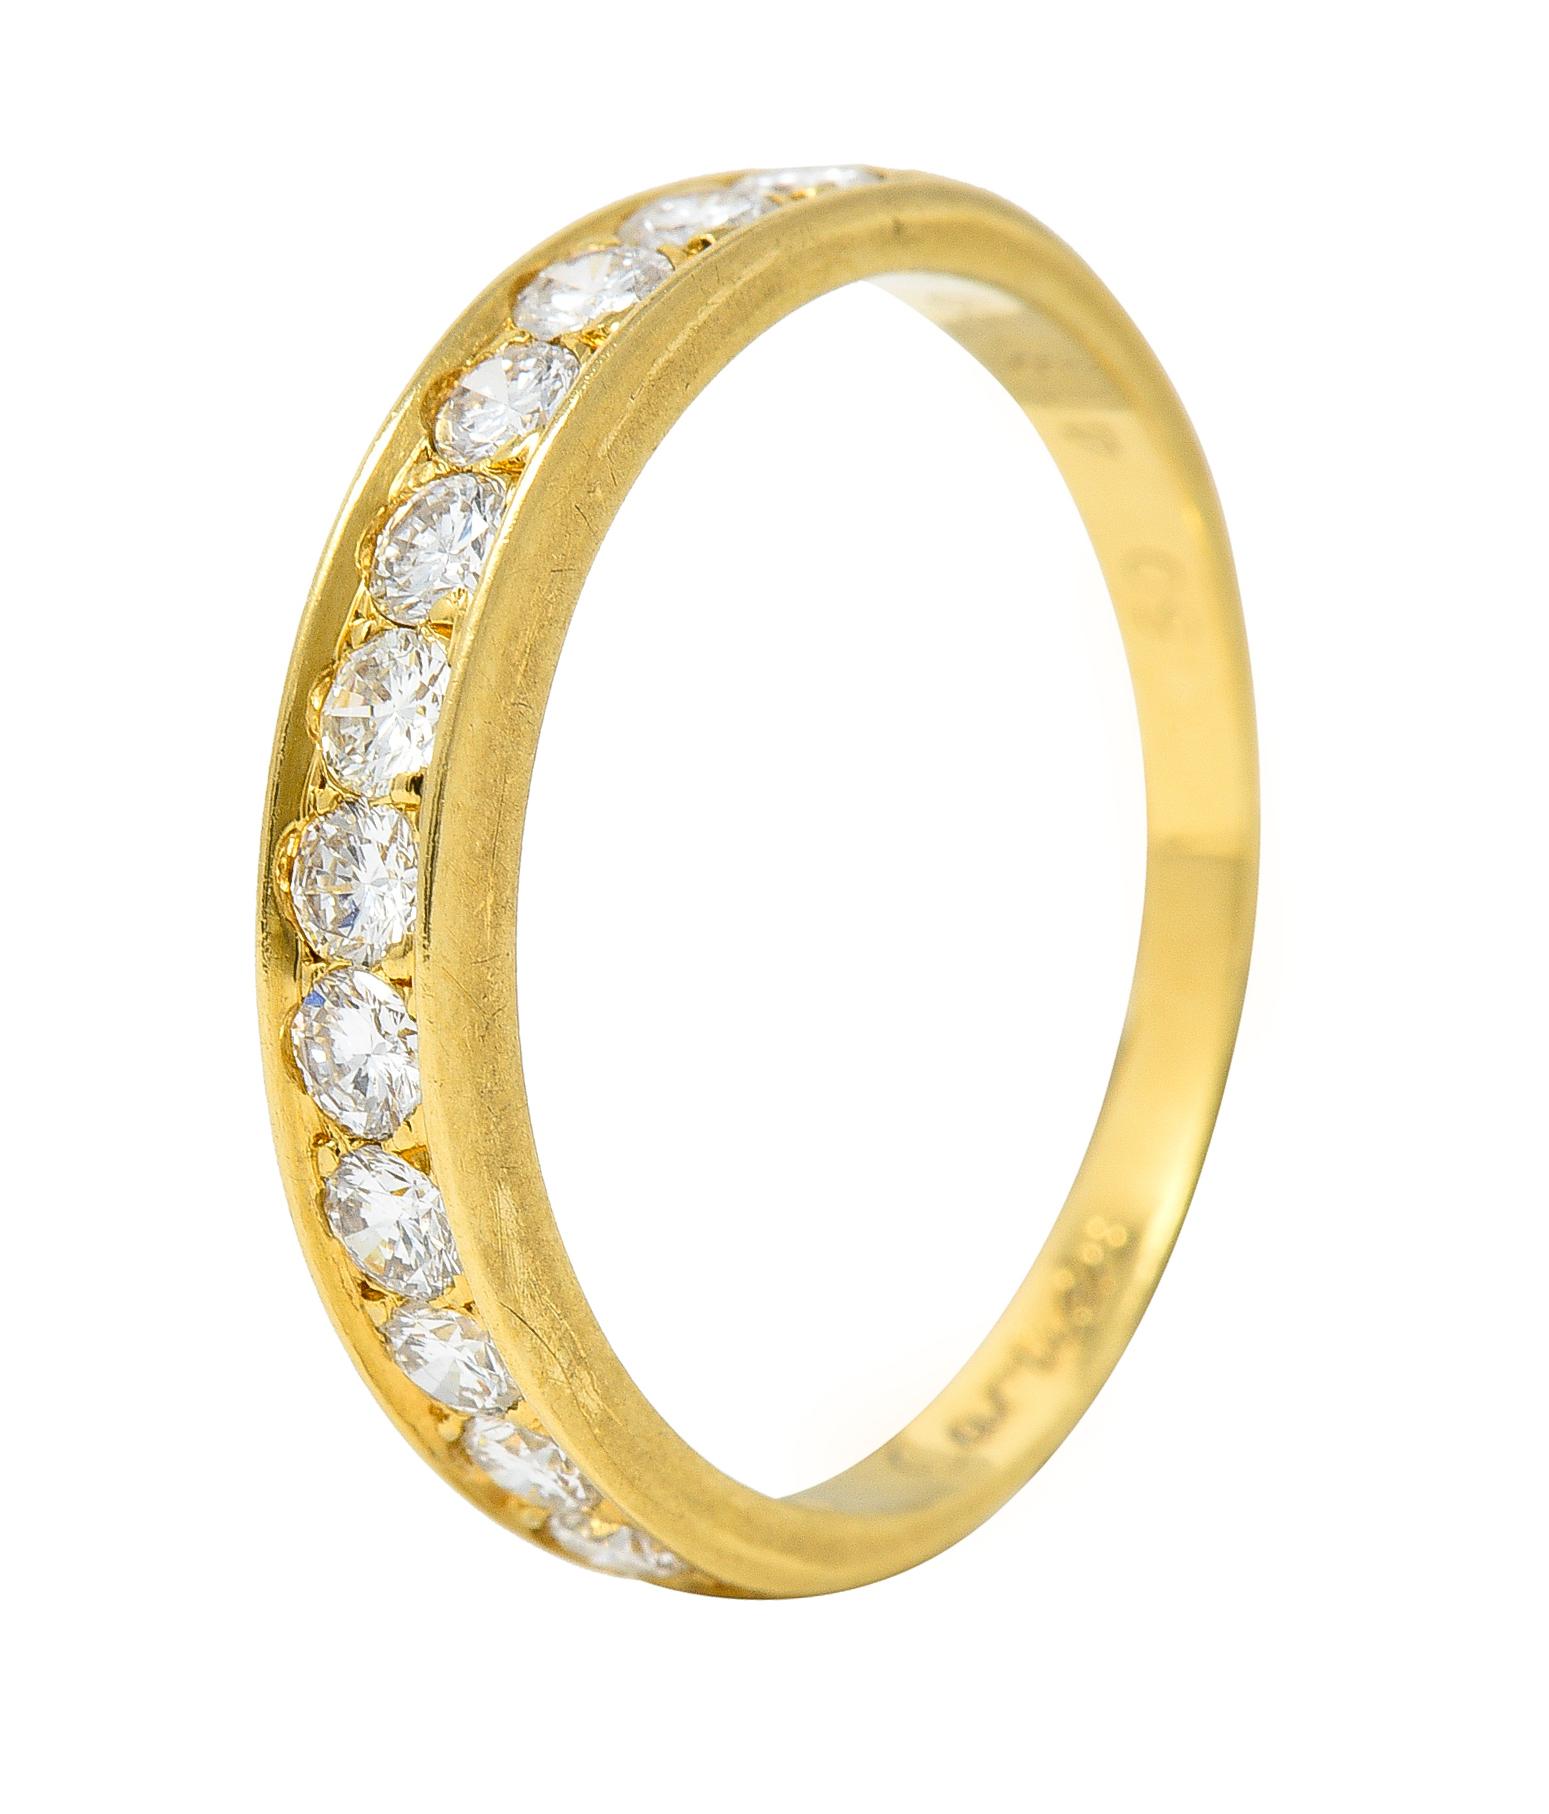 Cartier Contemporary 0.48 Carat Diamond 18 Karat Yellow Gold Band Ring 4